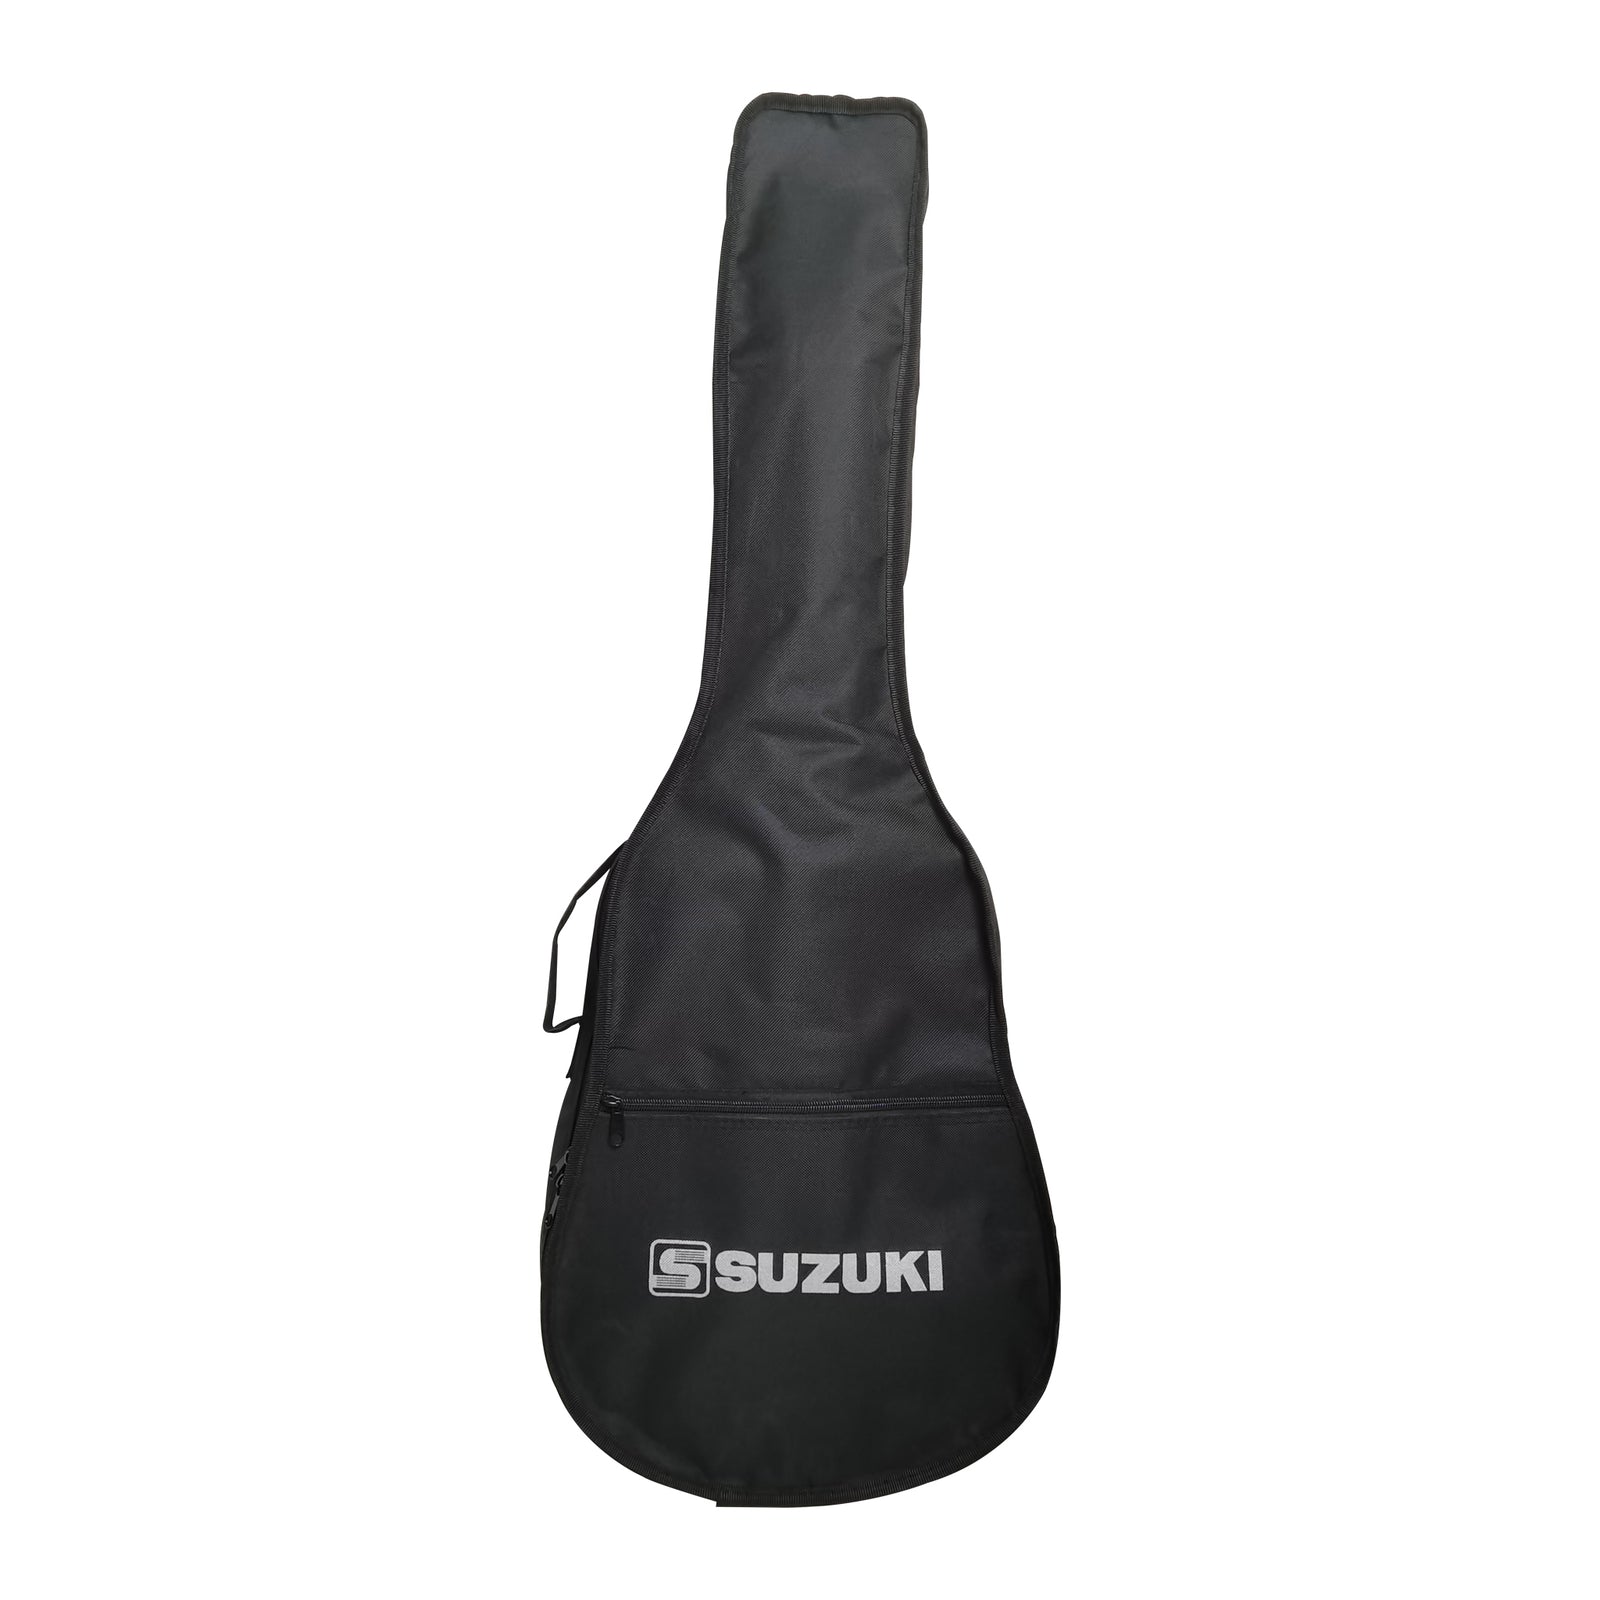 Suzuki SCG-2S 1/2 Classical Guitar Natural